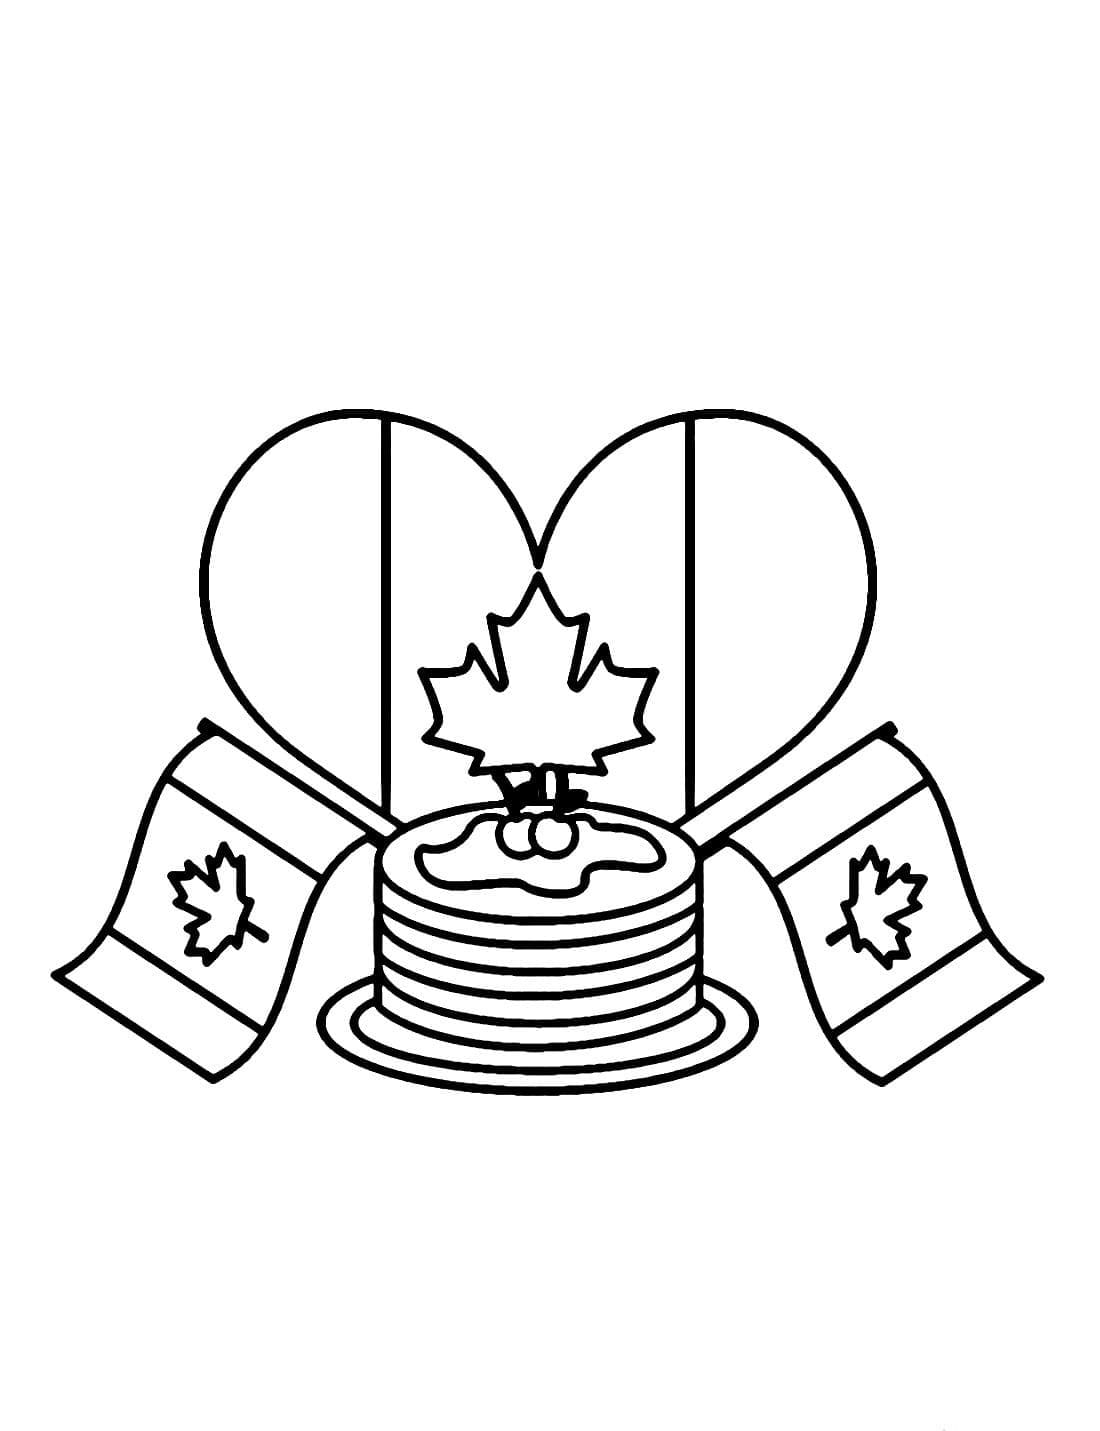 La Fête Nationale du Canada coloring page